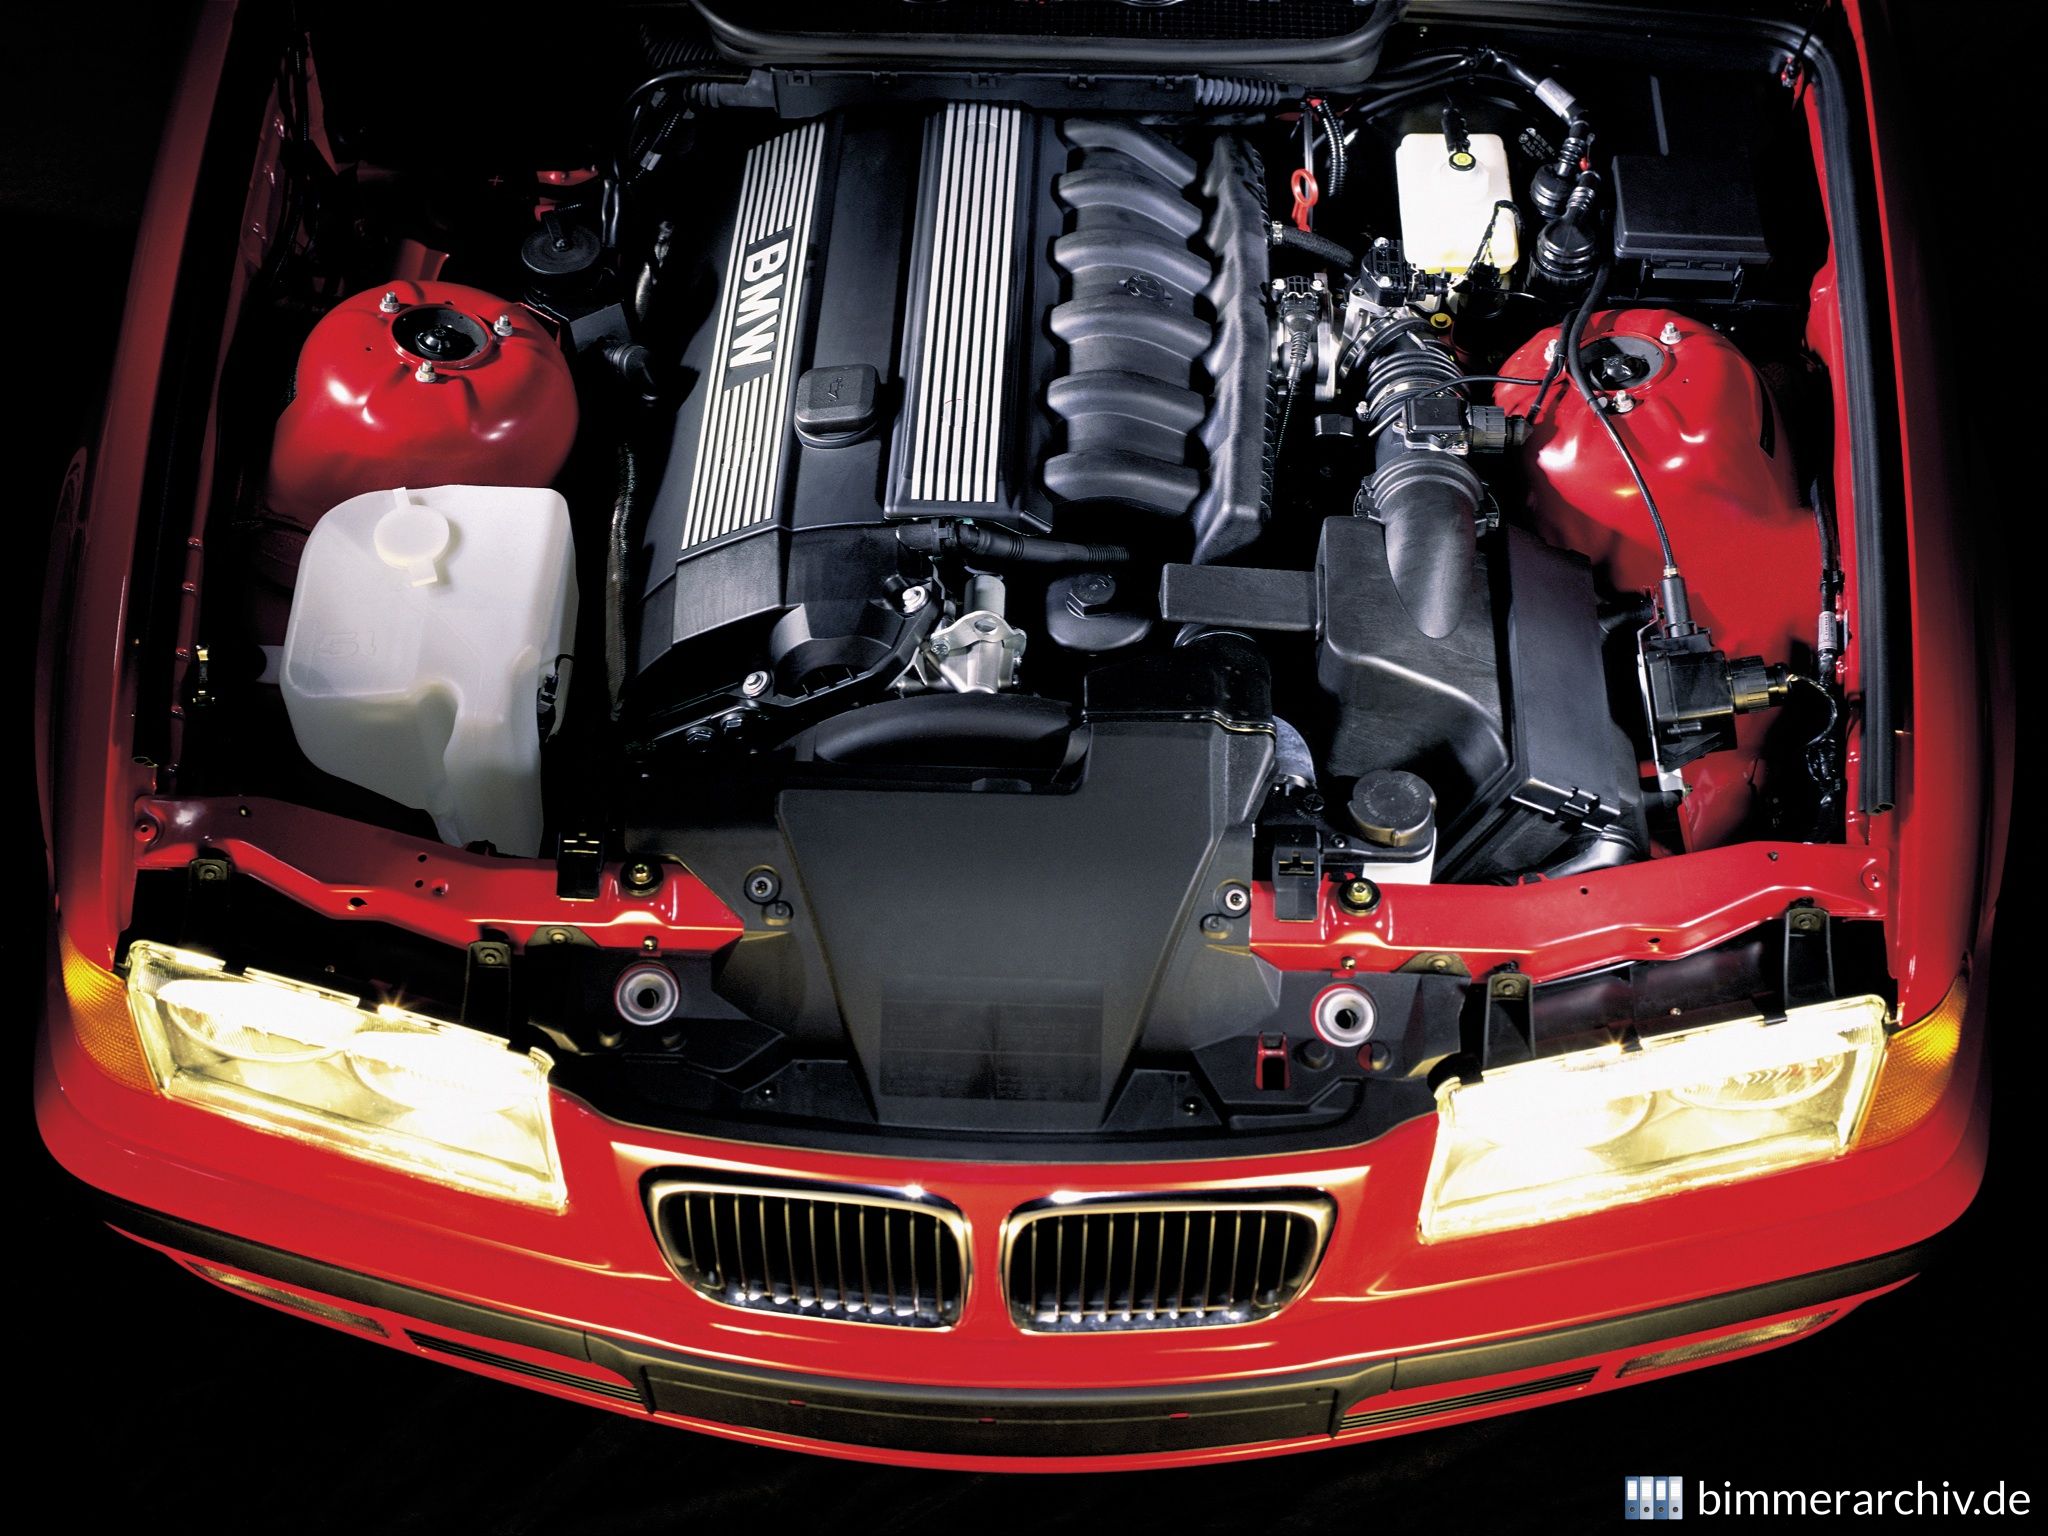 BMW M52